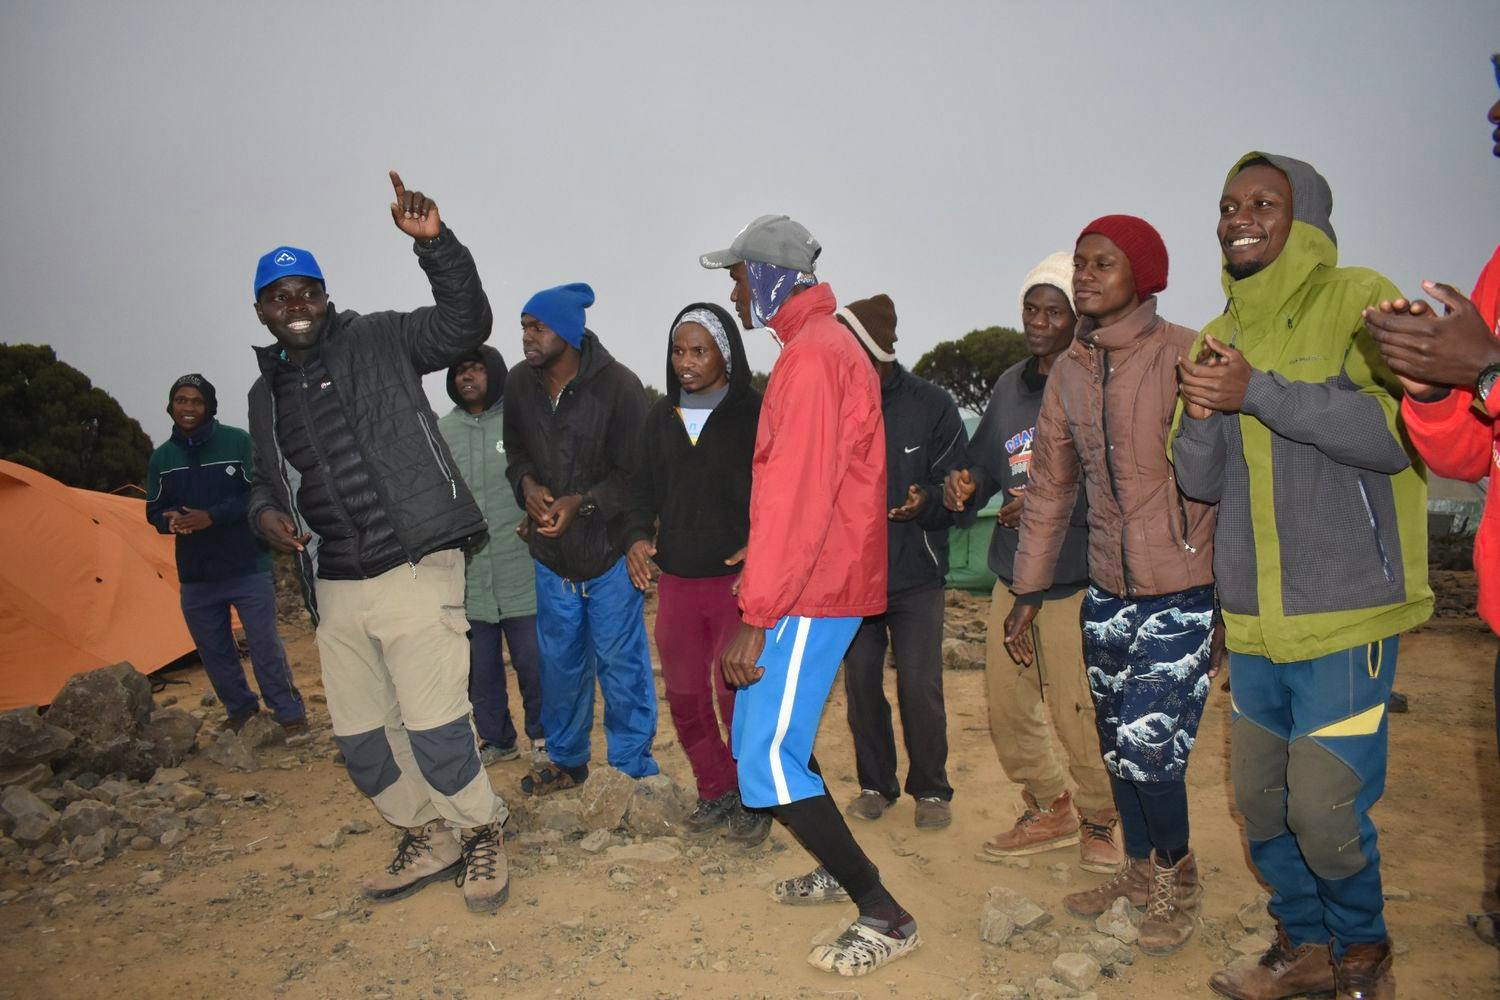 Kilimanjaro Camp team singing